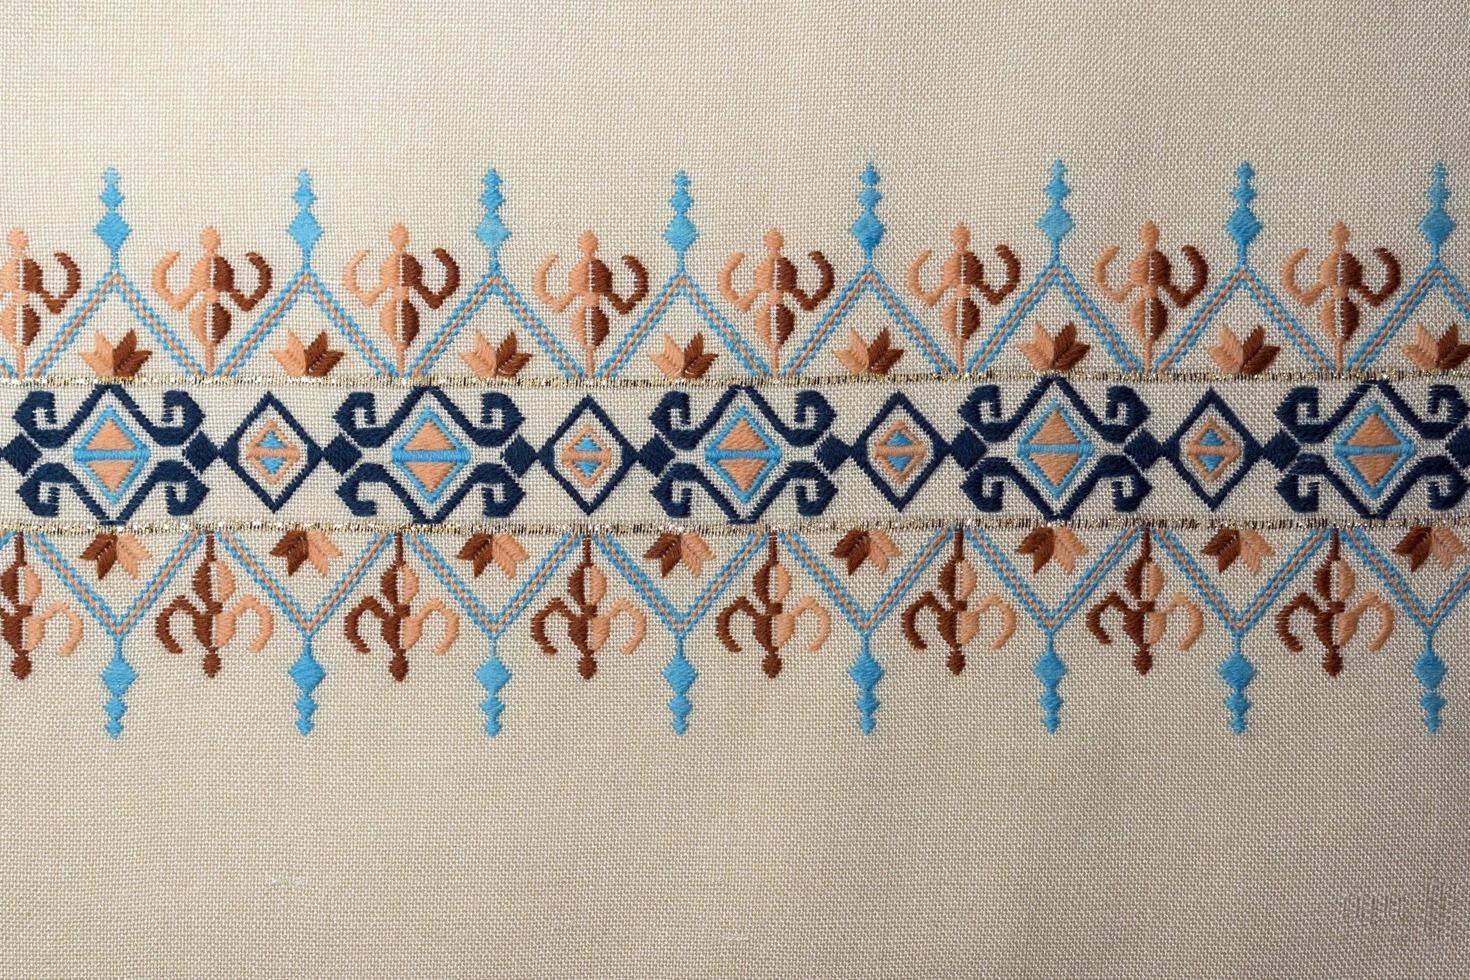 bordados coloridos artesanais vintage com padrões tradicionais turcos foto